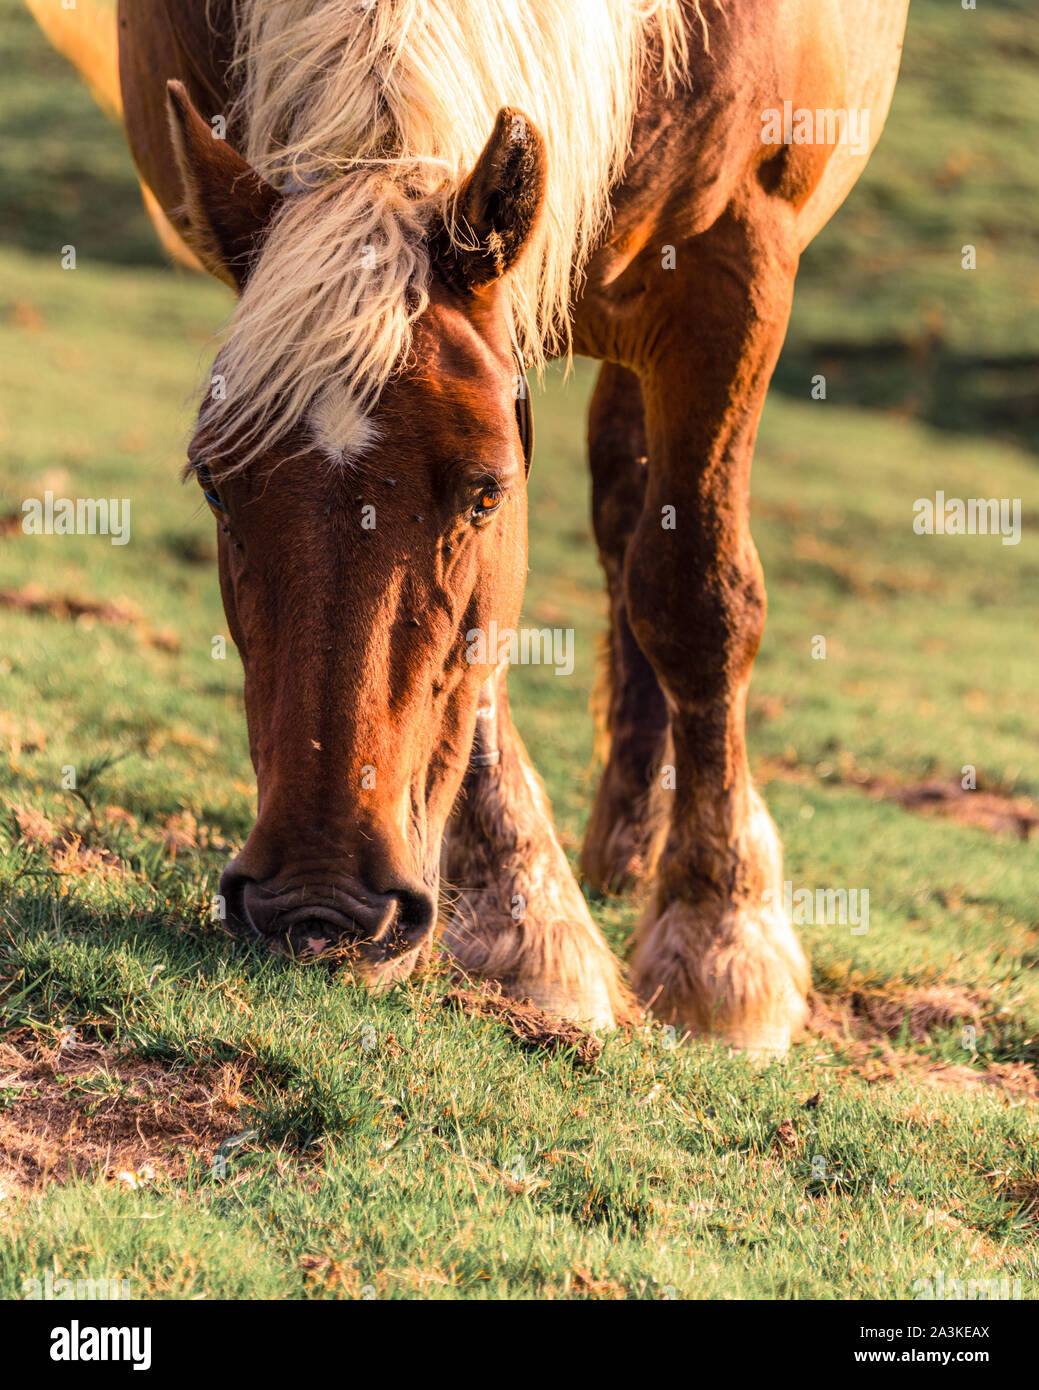 21/8-19, Mugarra, Pays basque, Espagne. Un beau cheval est le pâturage dans le parc naturel Urkiola, près du sommet du Mugarra. Banque D'Images